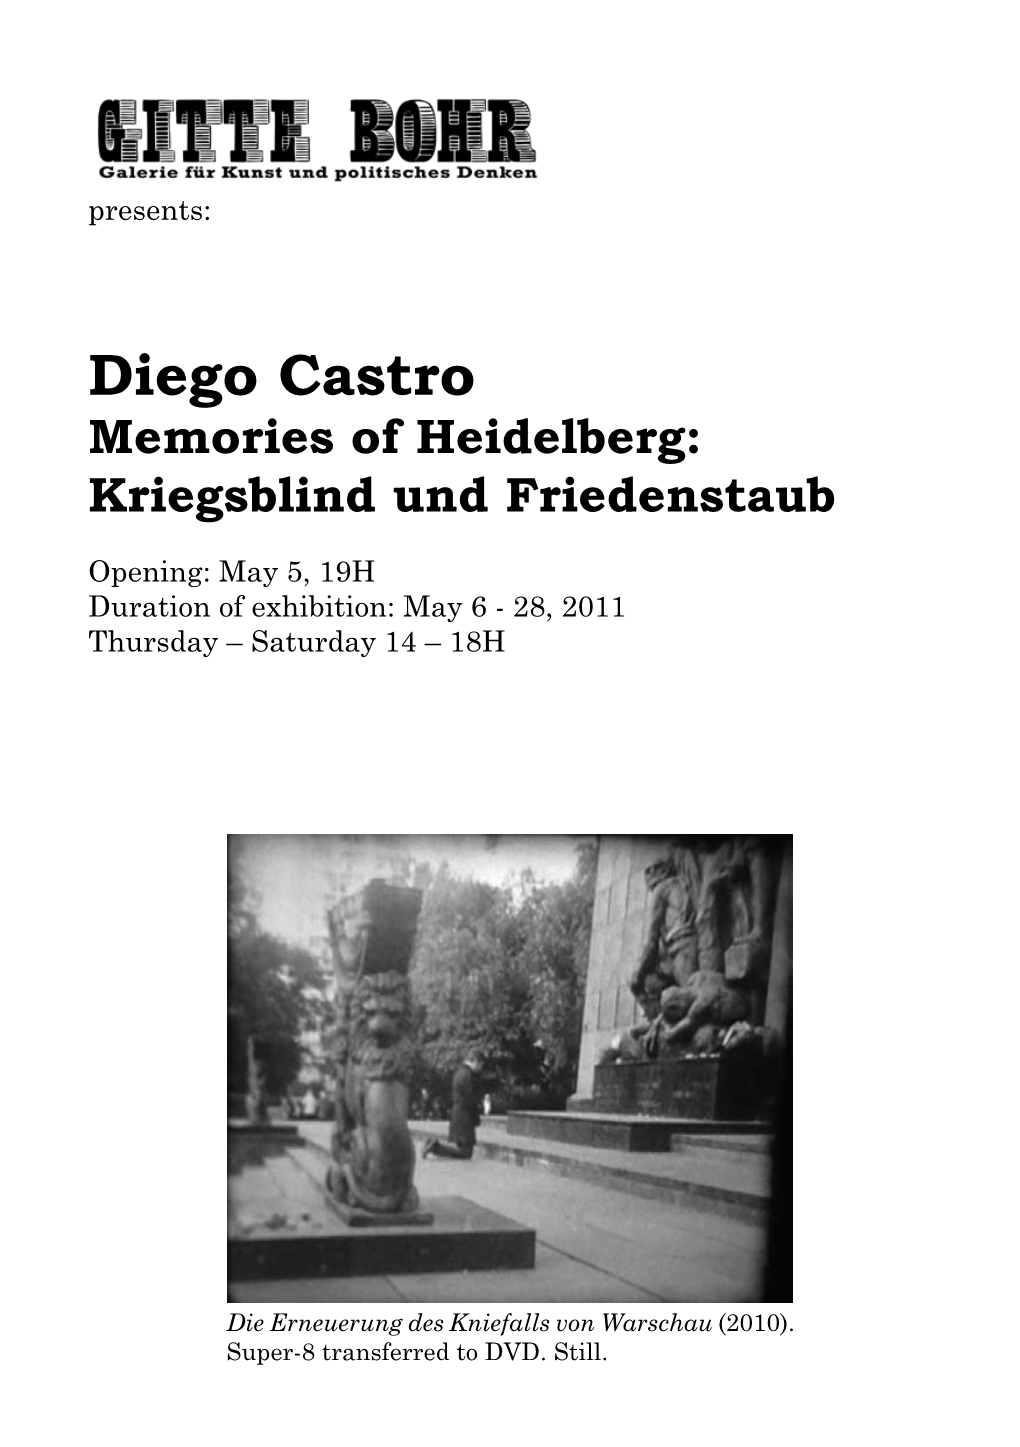 Diego Castro Memories of Heidelberg: Kriegsblind Und Friedenstaub